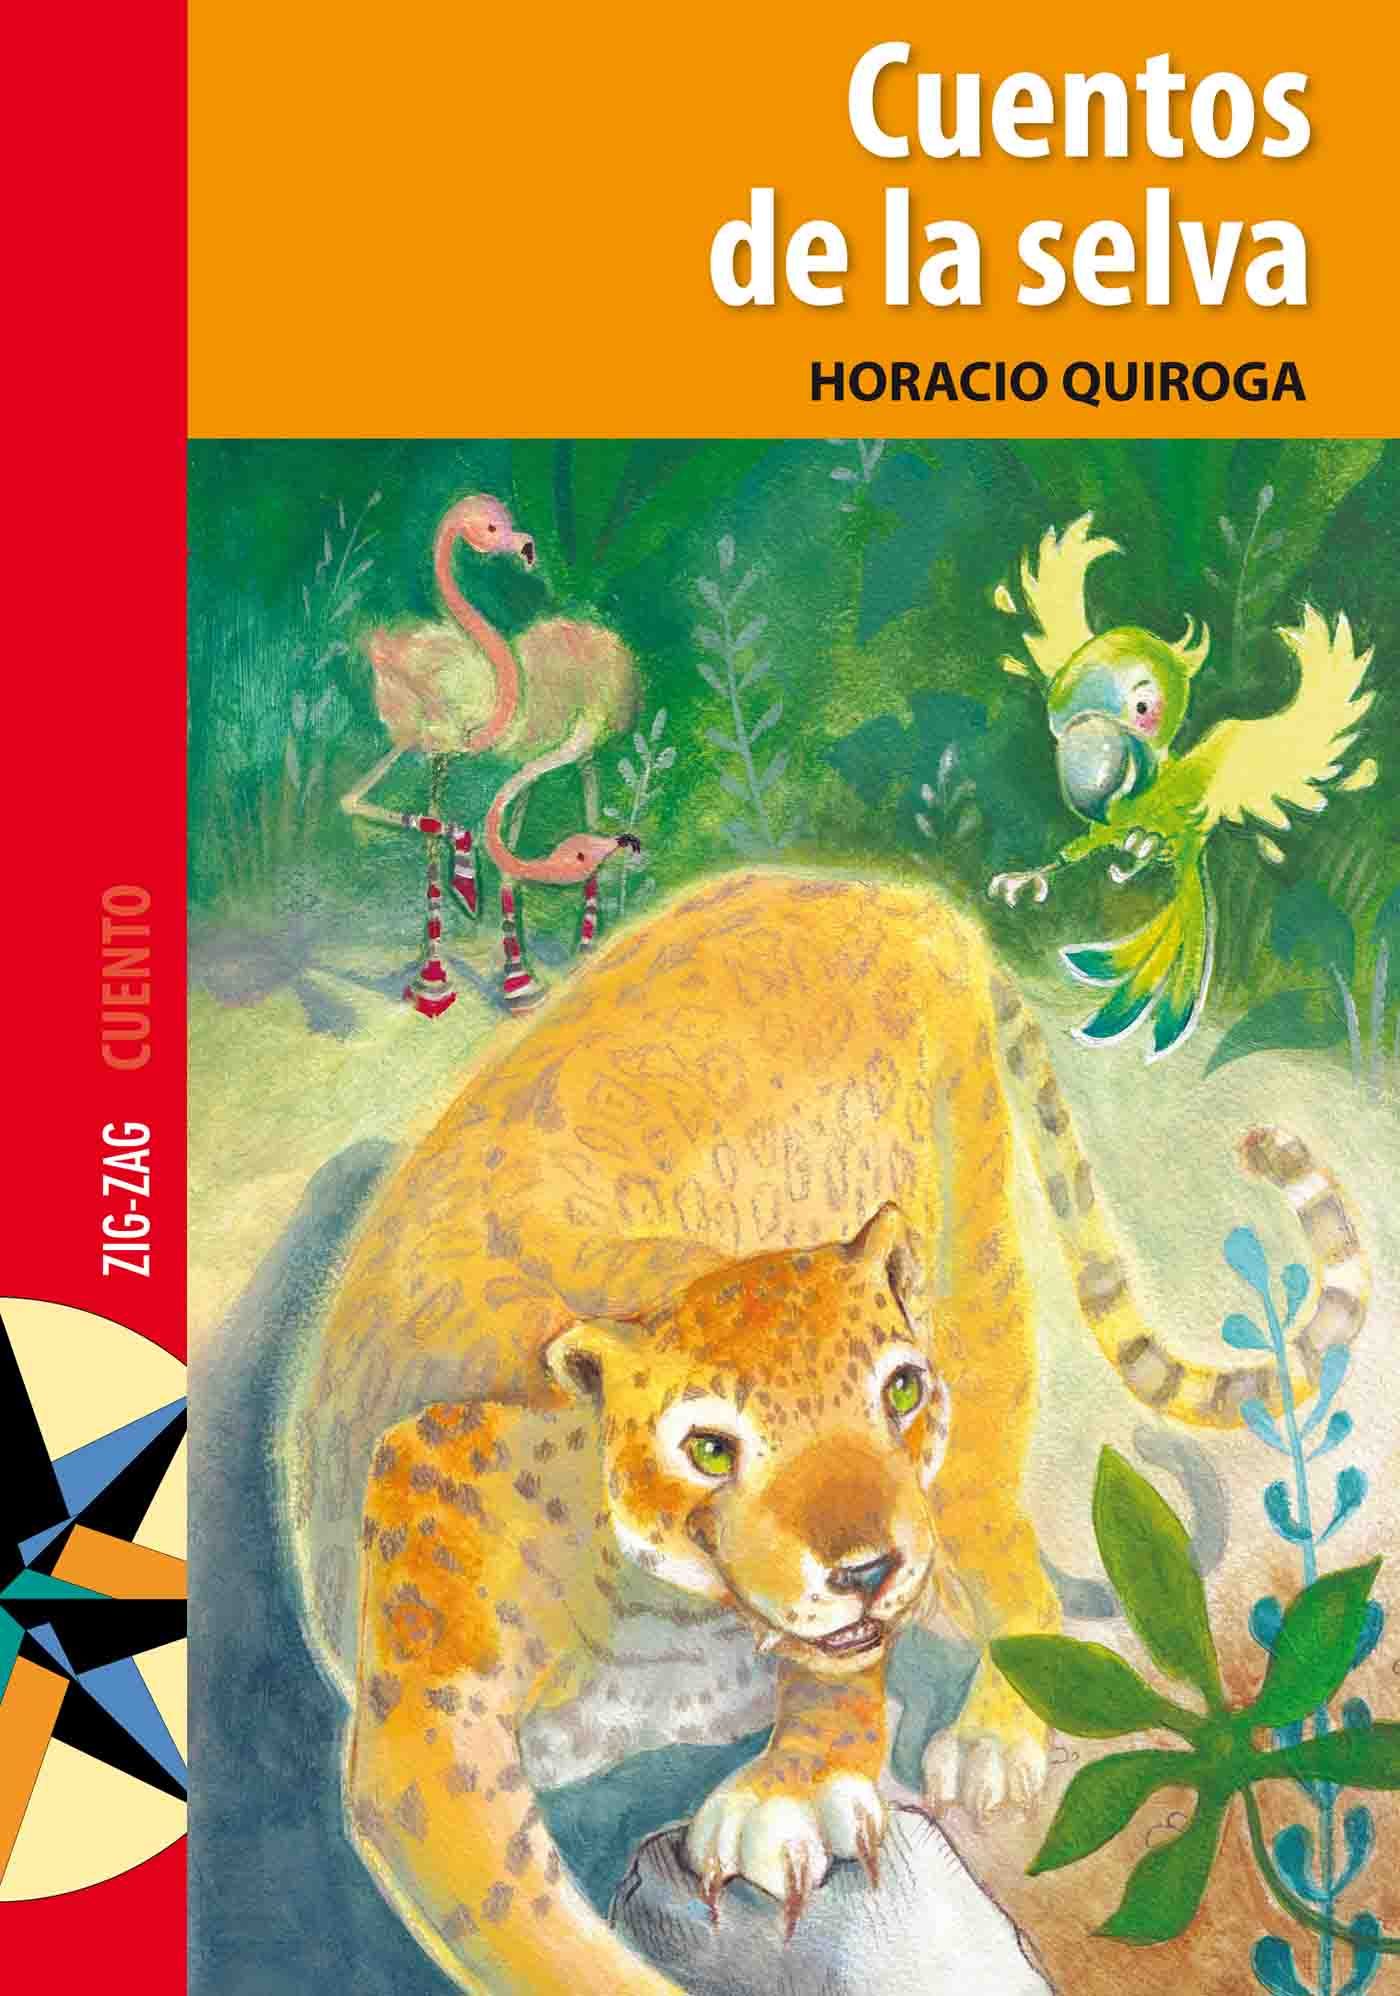 Cuentos De La Selva Ebook Horacio Quiroga Descargar Libro Pdf O Epub 9789561221949 5313